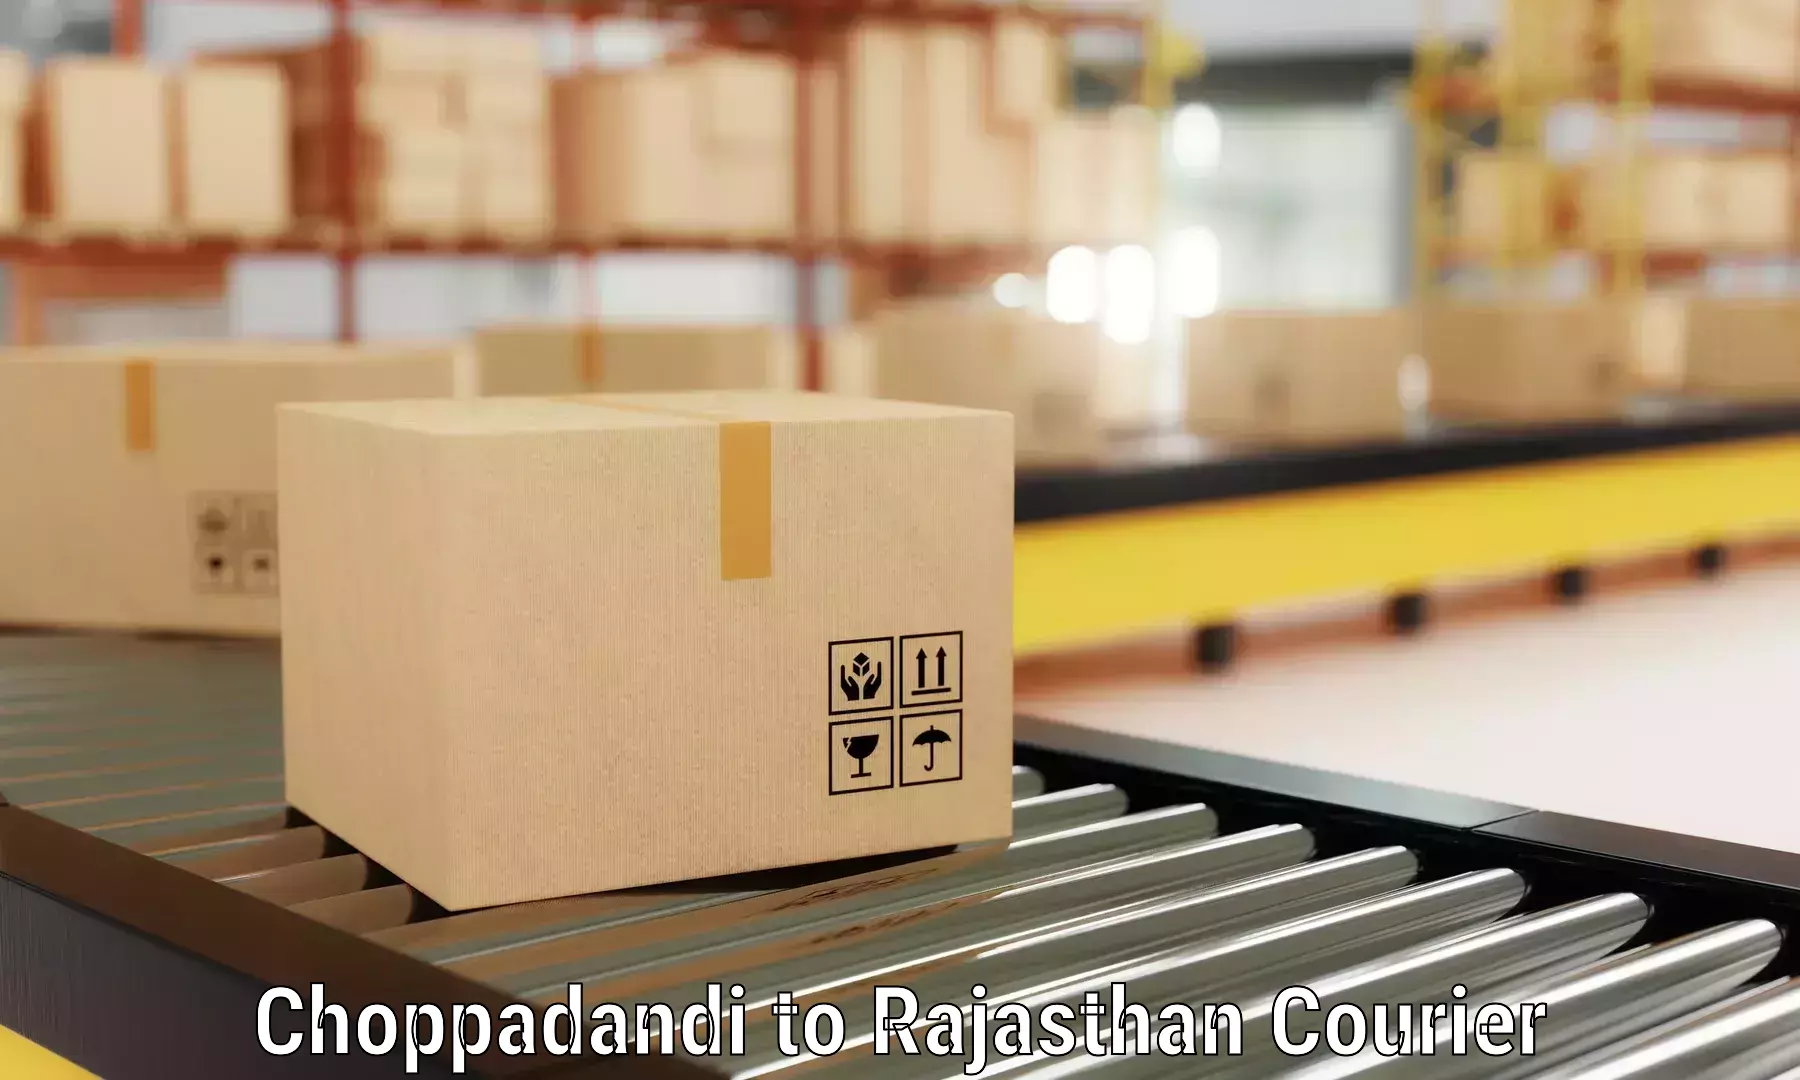 Specialized moving company Choppadandi to Makrana